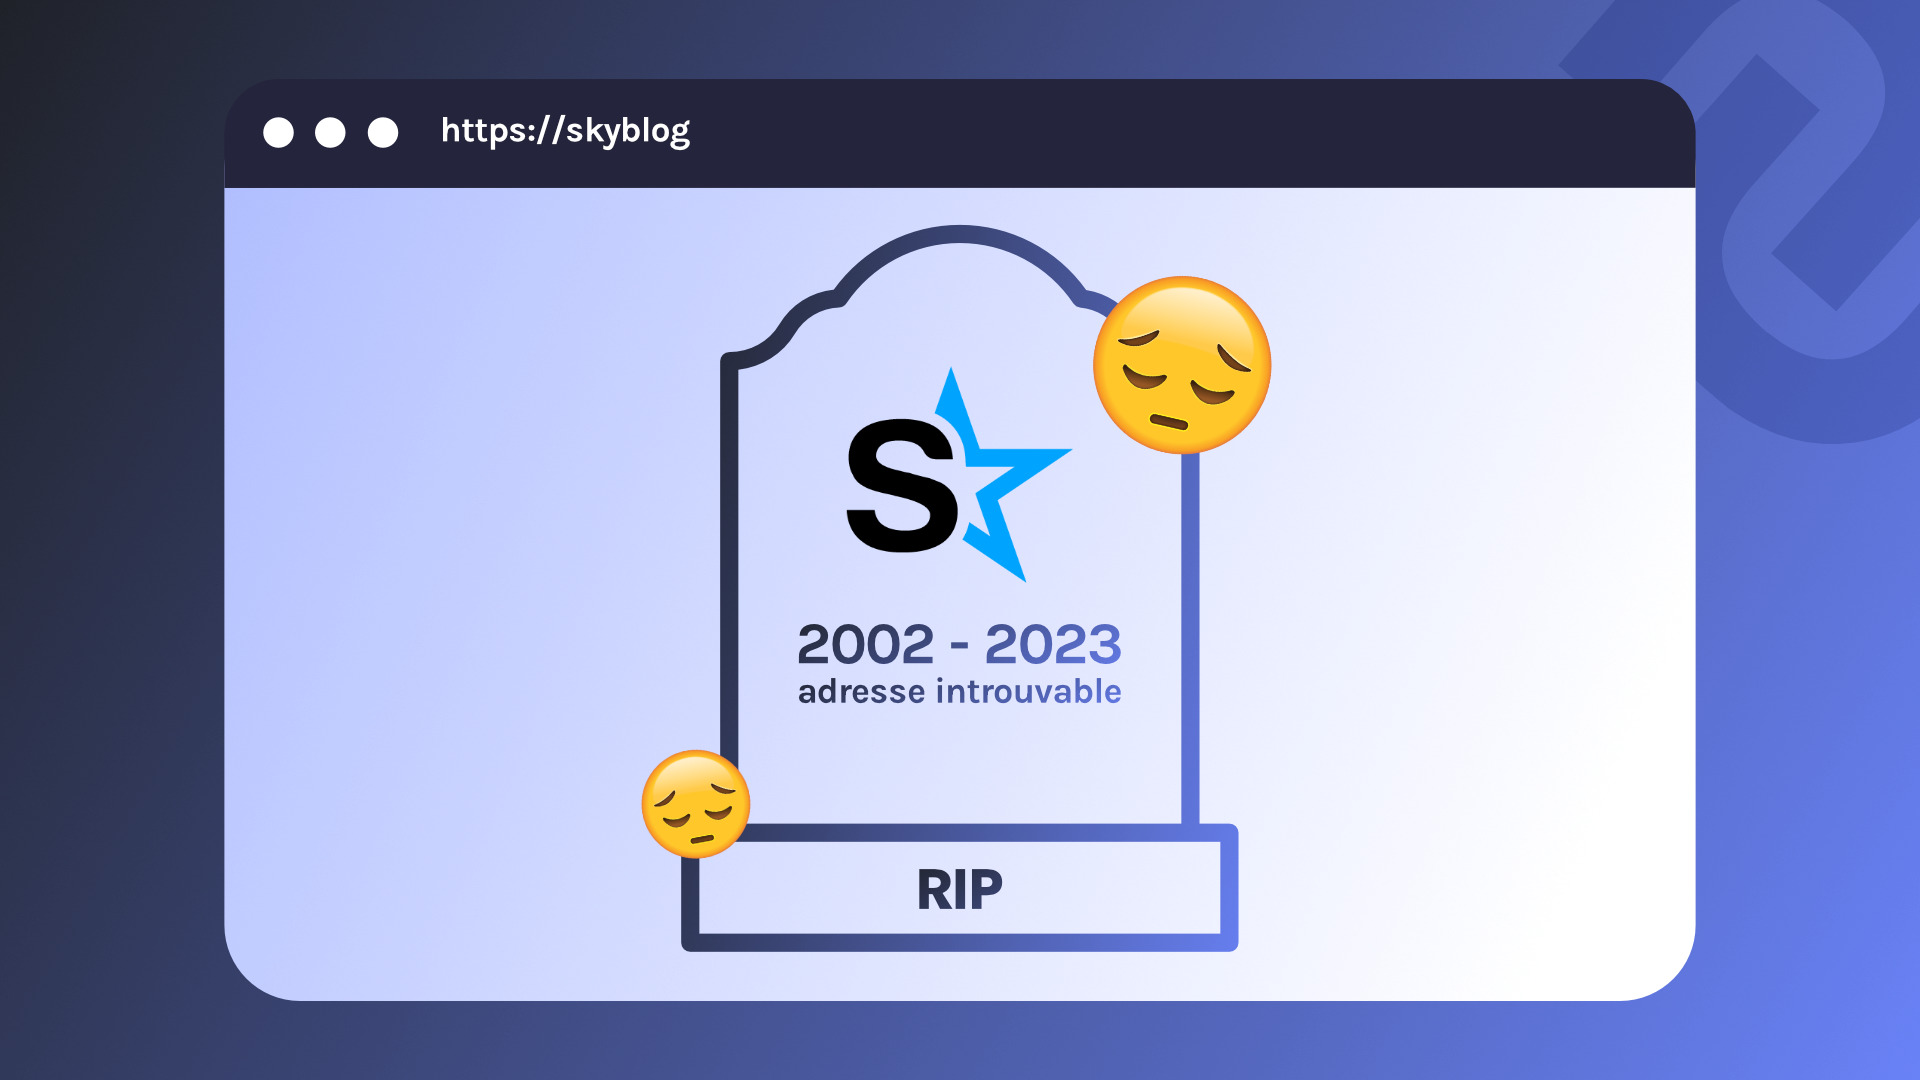 Ils ont tué un moyen dexpression » derrière la mort de Skyblog, des utilisateurs désespérés